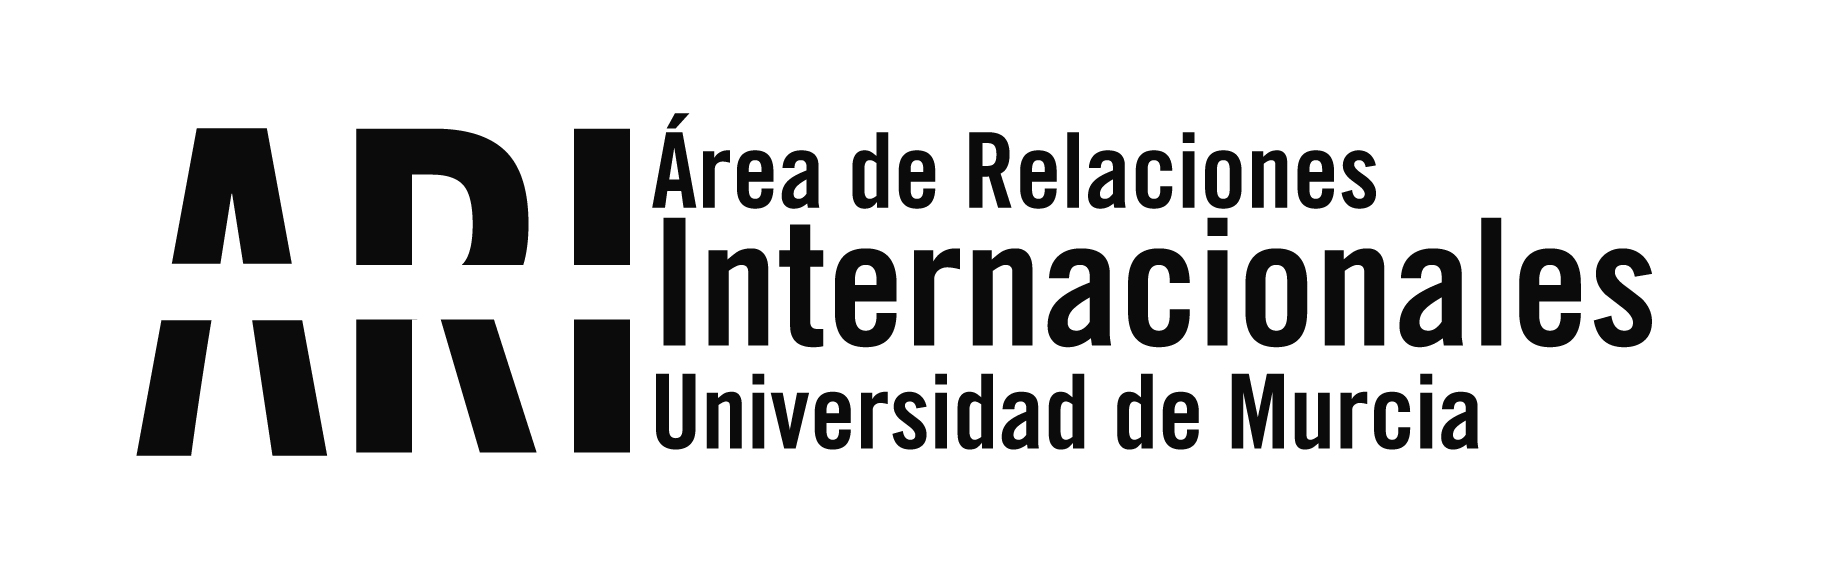 Lanzamiento en la UMU de un proyecto internacional para el estudio de la integración de refugiados a través de la Educación - Área de Relaciones Internacionales